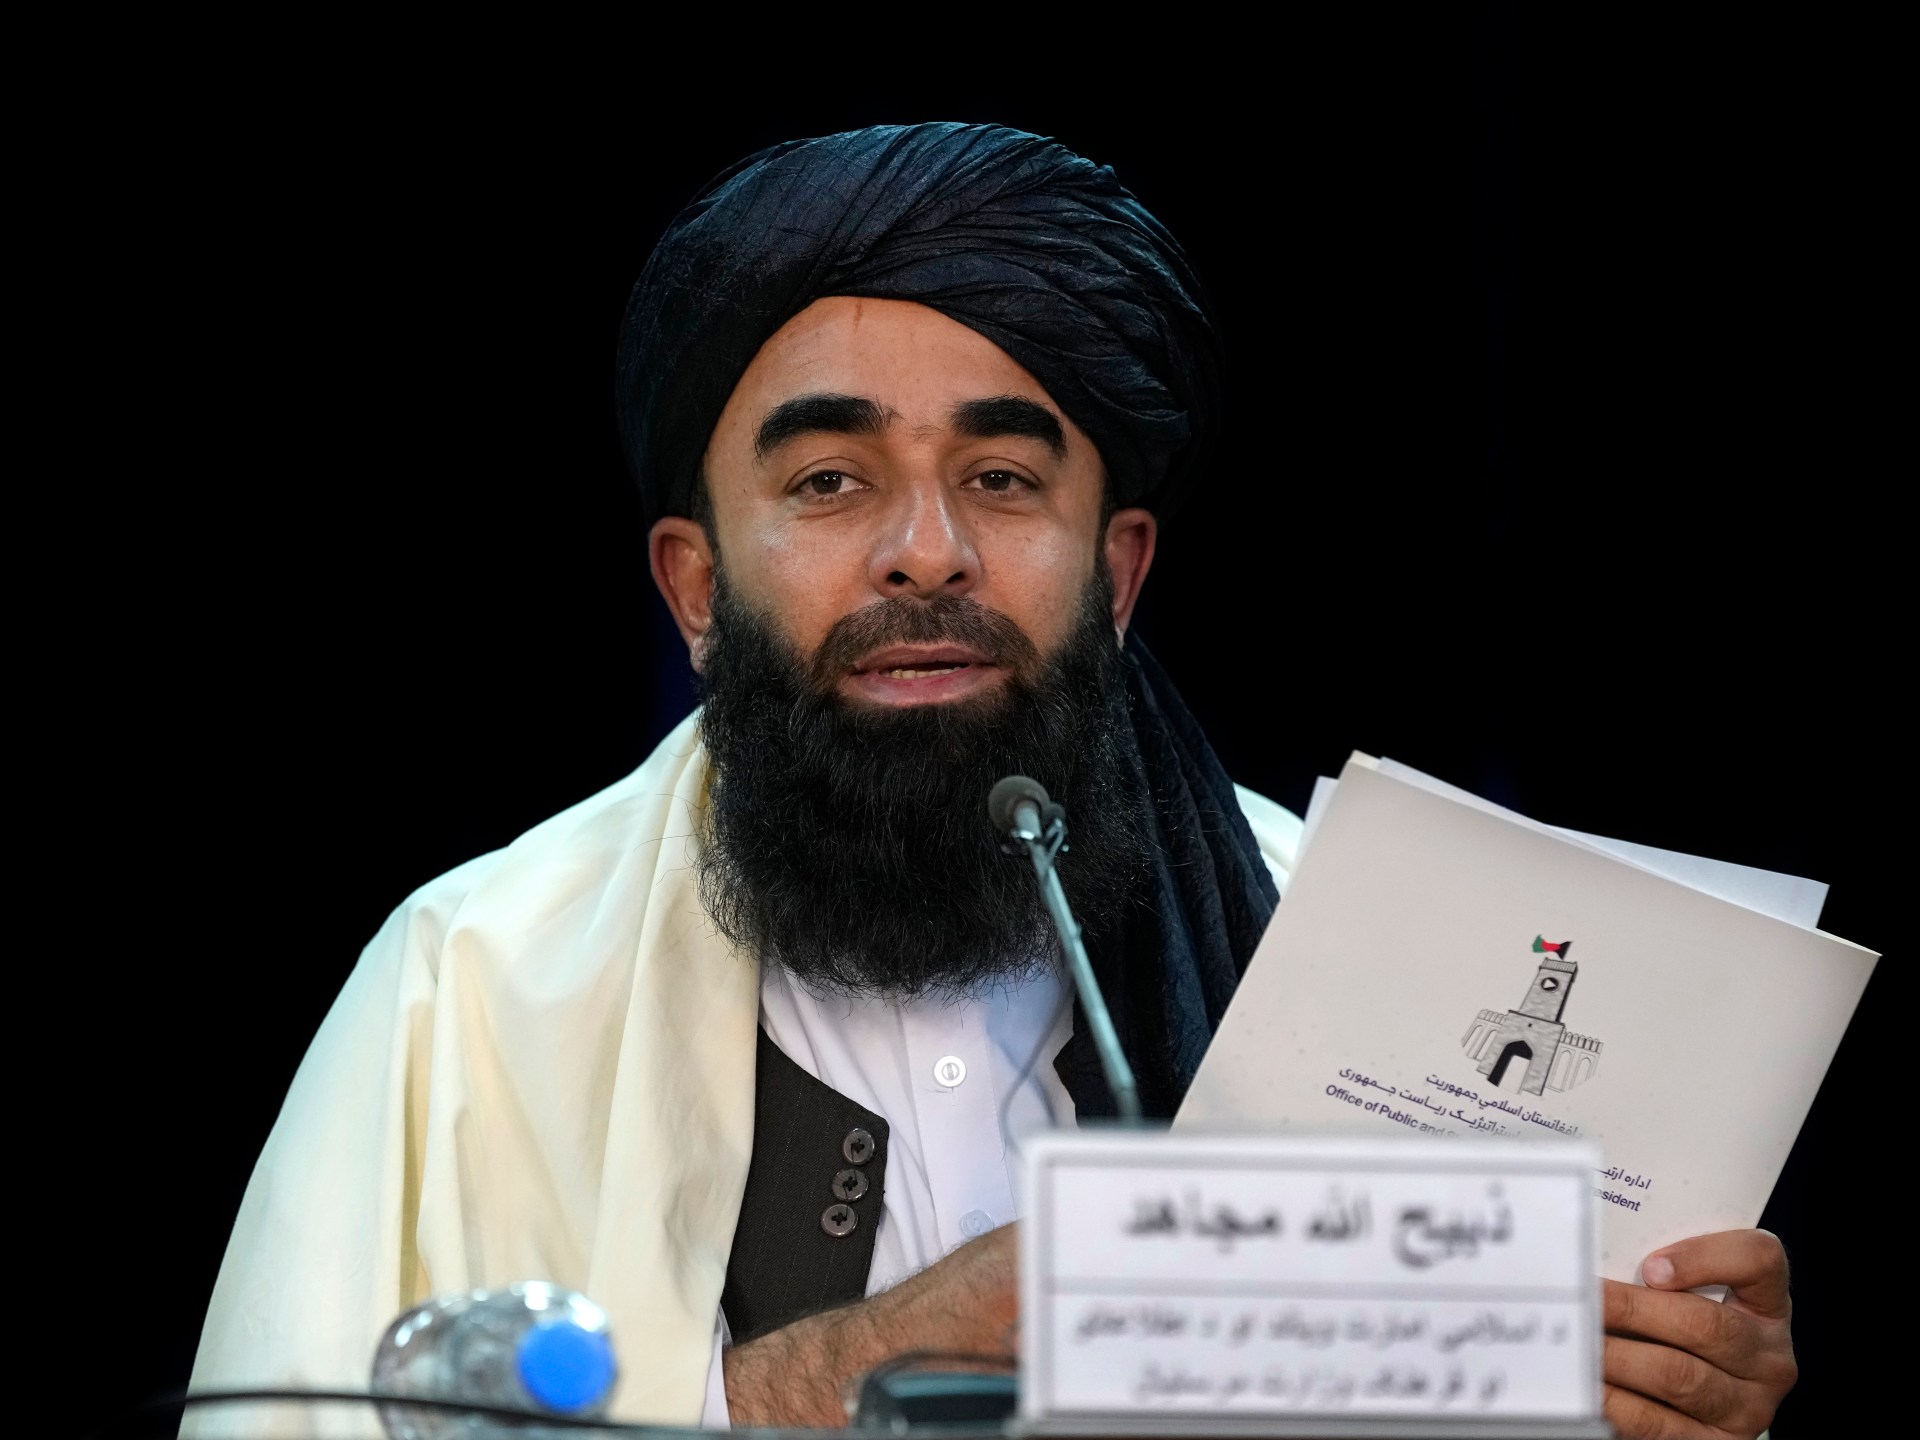 Taliban mengkritik laporan PBB yang menyebut pemerintah Afghanistan ‘eksklusif’ |  Berita Taliban